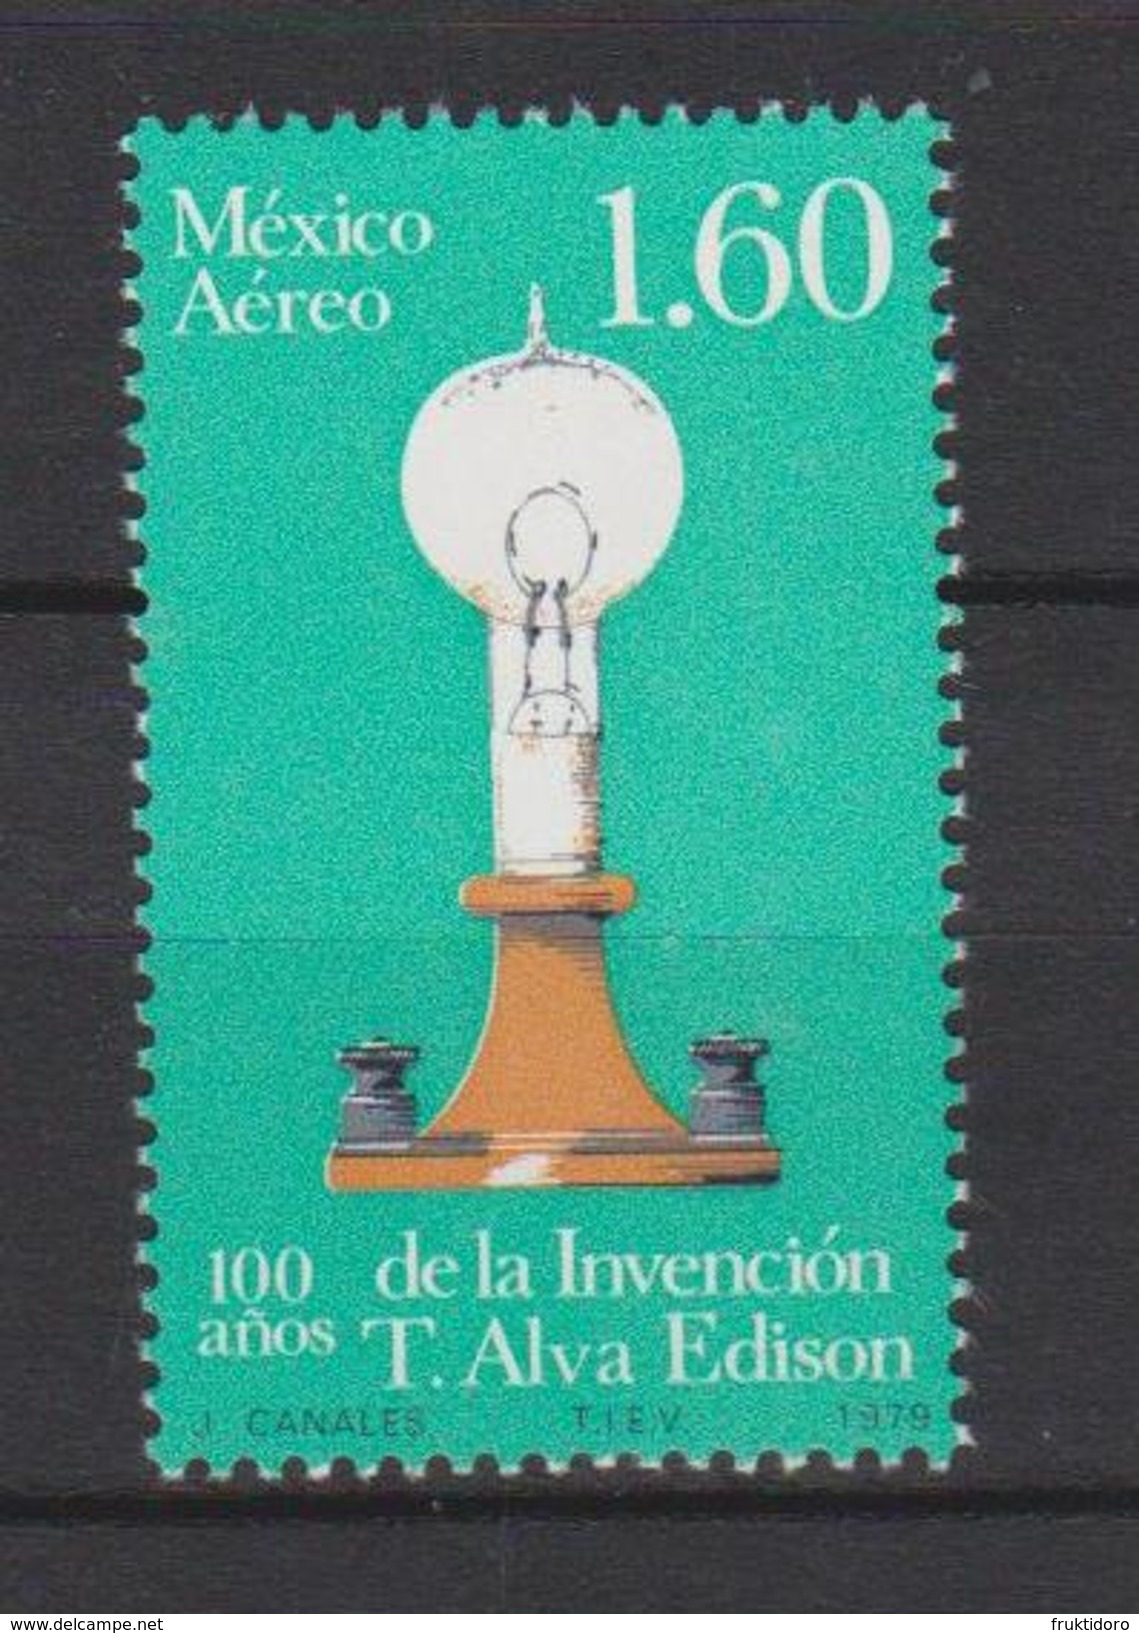 Mexico Mi 1650 Centenary Of The Invention Of Electric Bulb - T. Alva Edison - 1979 * * - Mexico